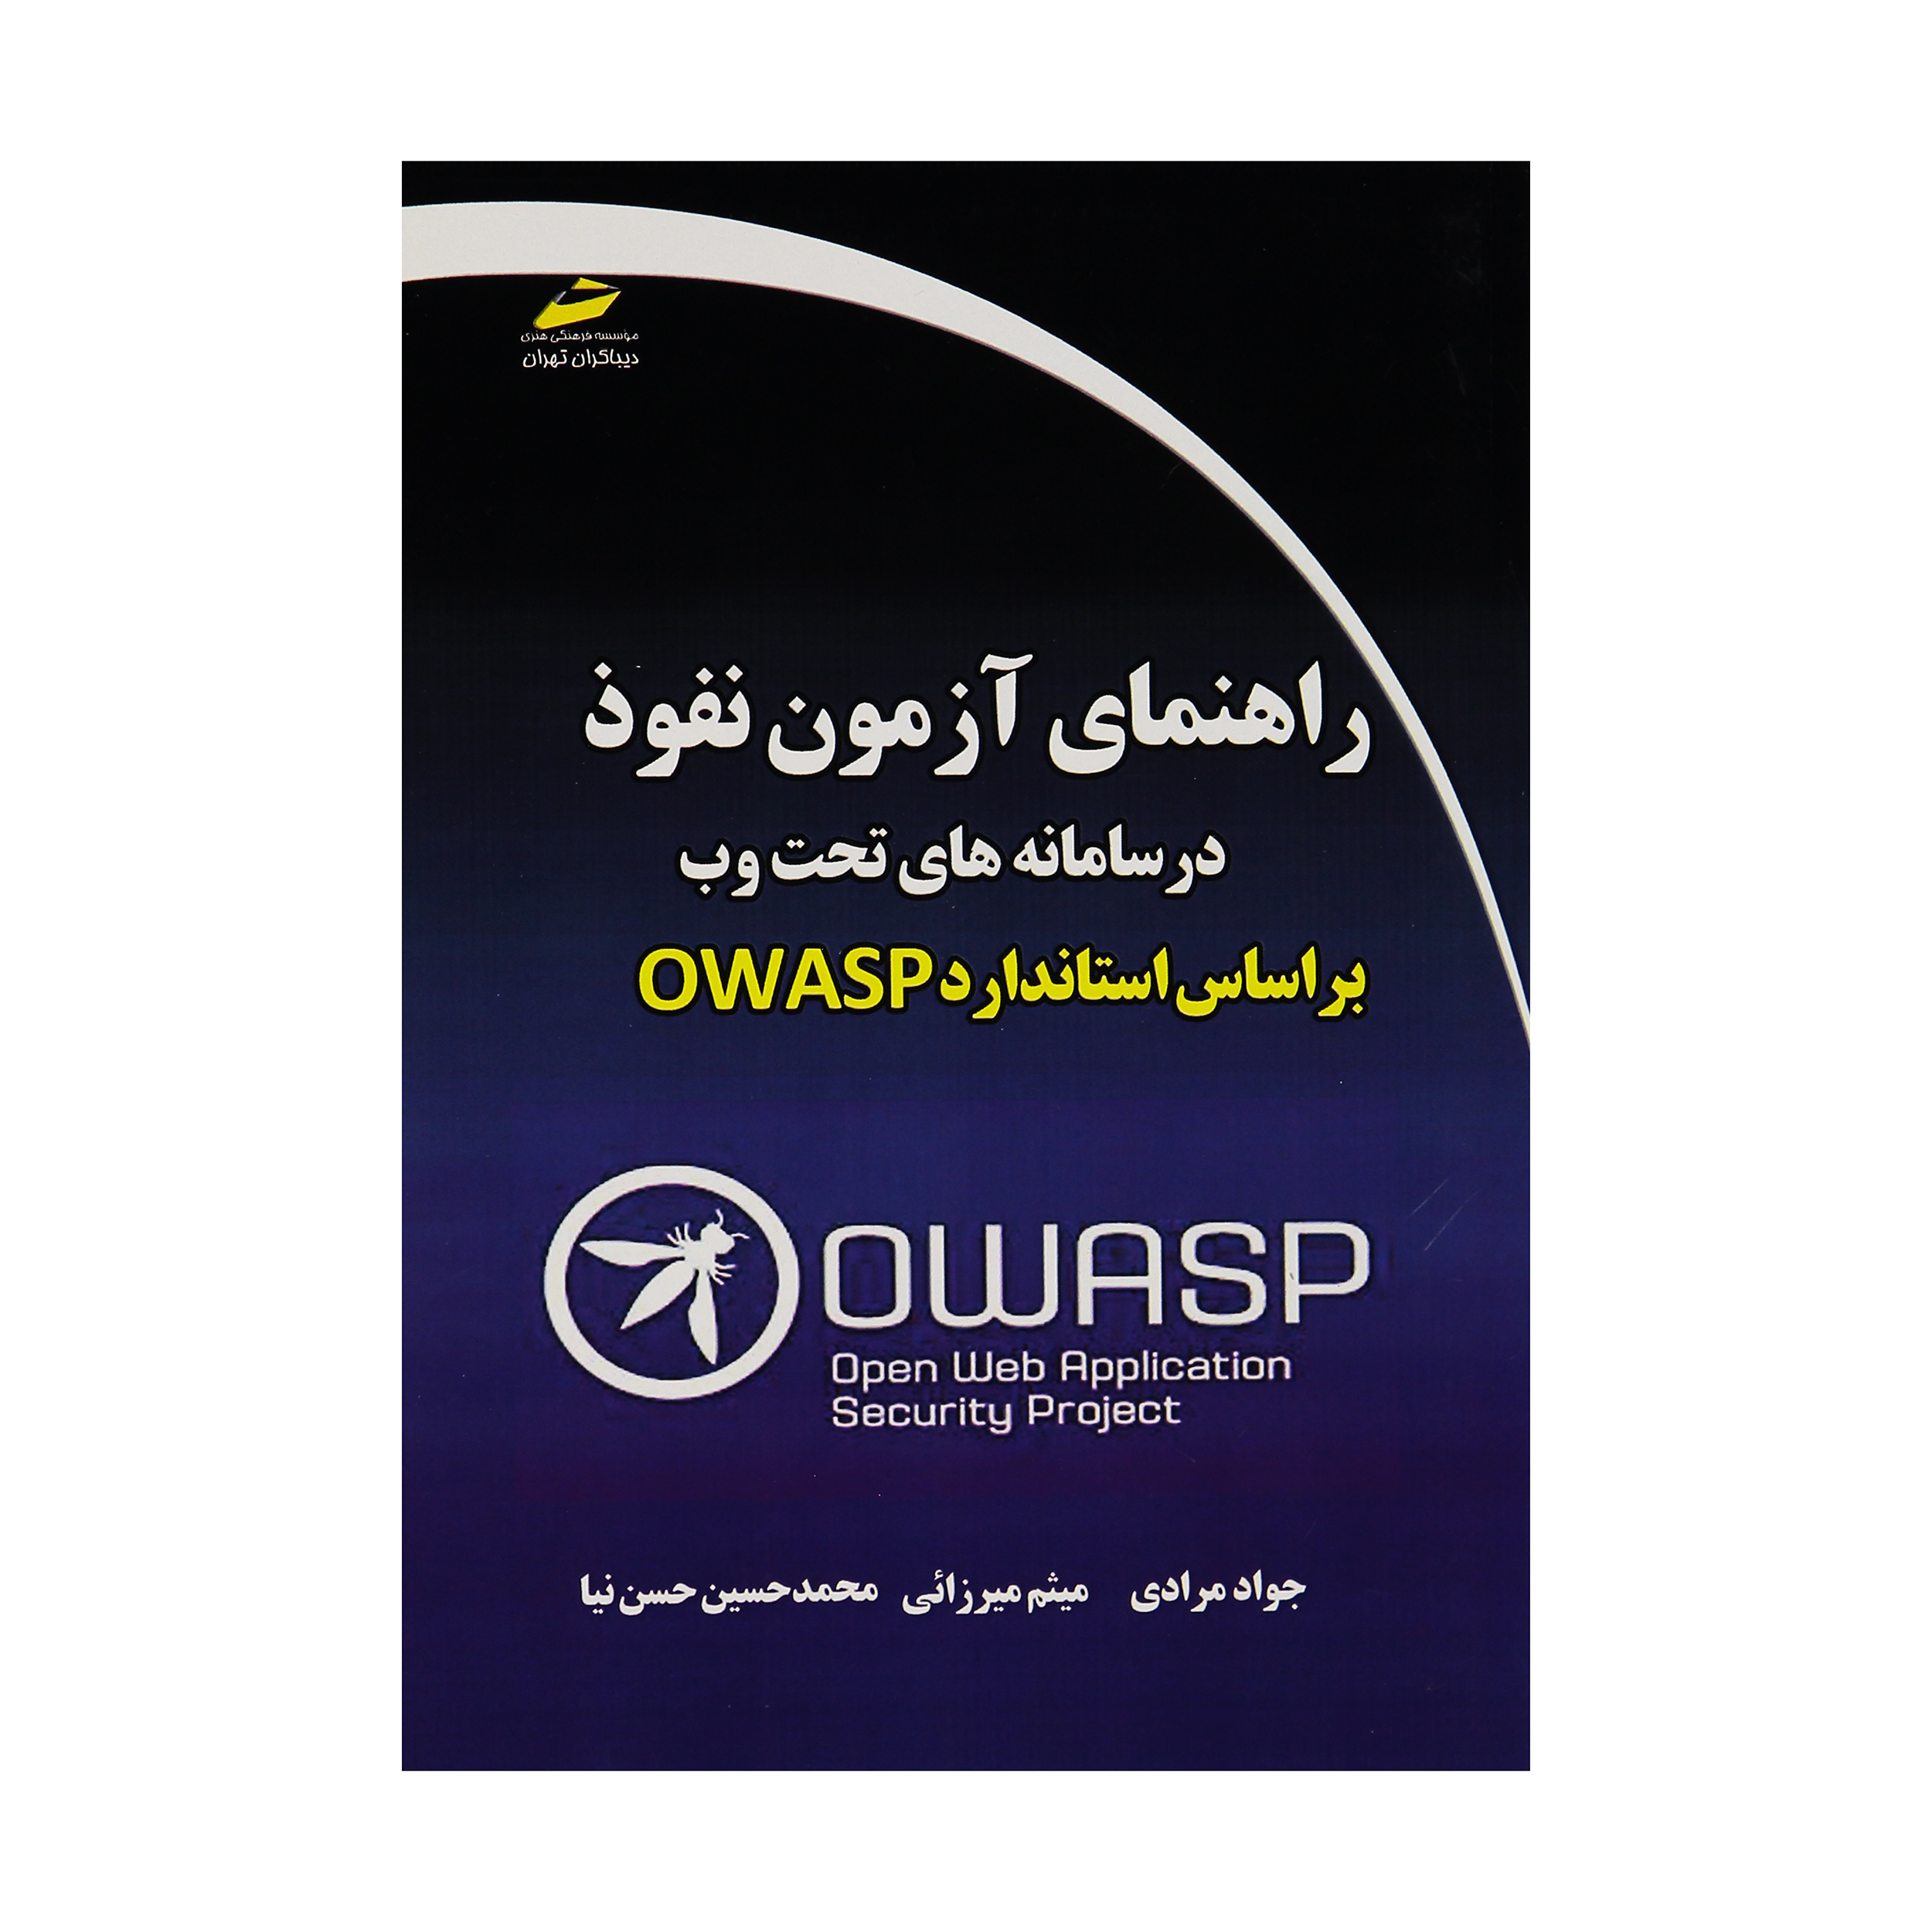 کتاب راهنماي آزمون نفوذ در سامانه هاي تحت وب بر اساس استاندارد OWASP اثر جمعی از نویسندگان نشر دیباگران تهران